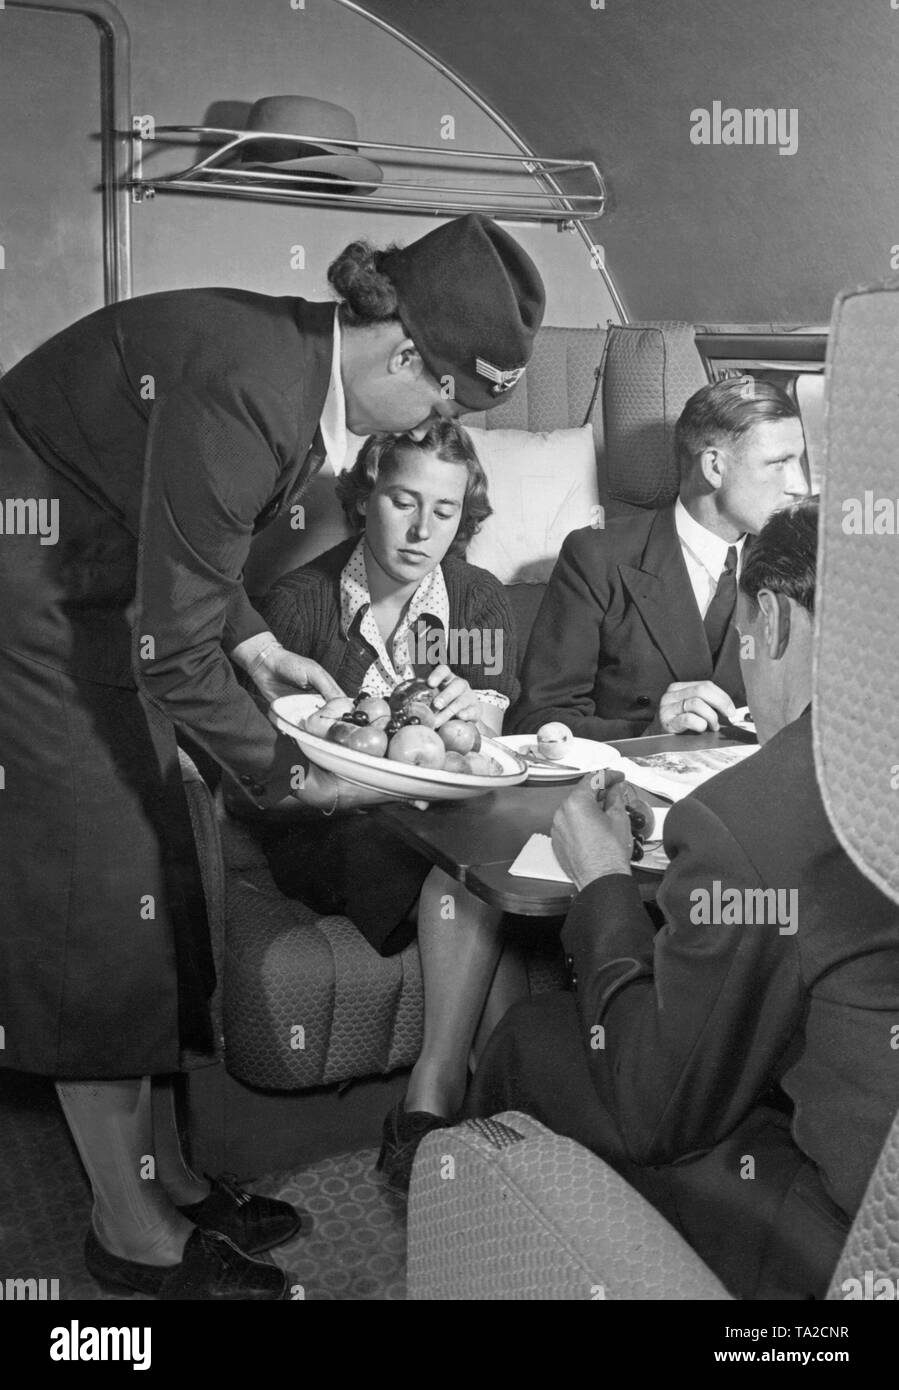 A Lufthansa stewardess serves a first-class passenger. Stock Photo